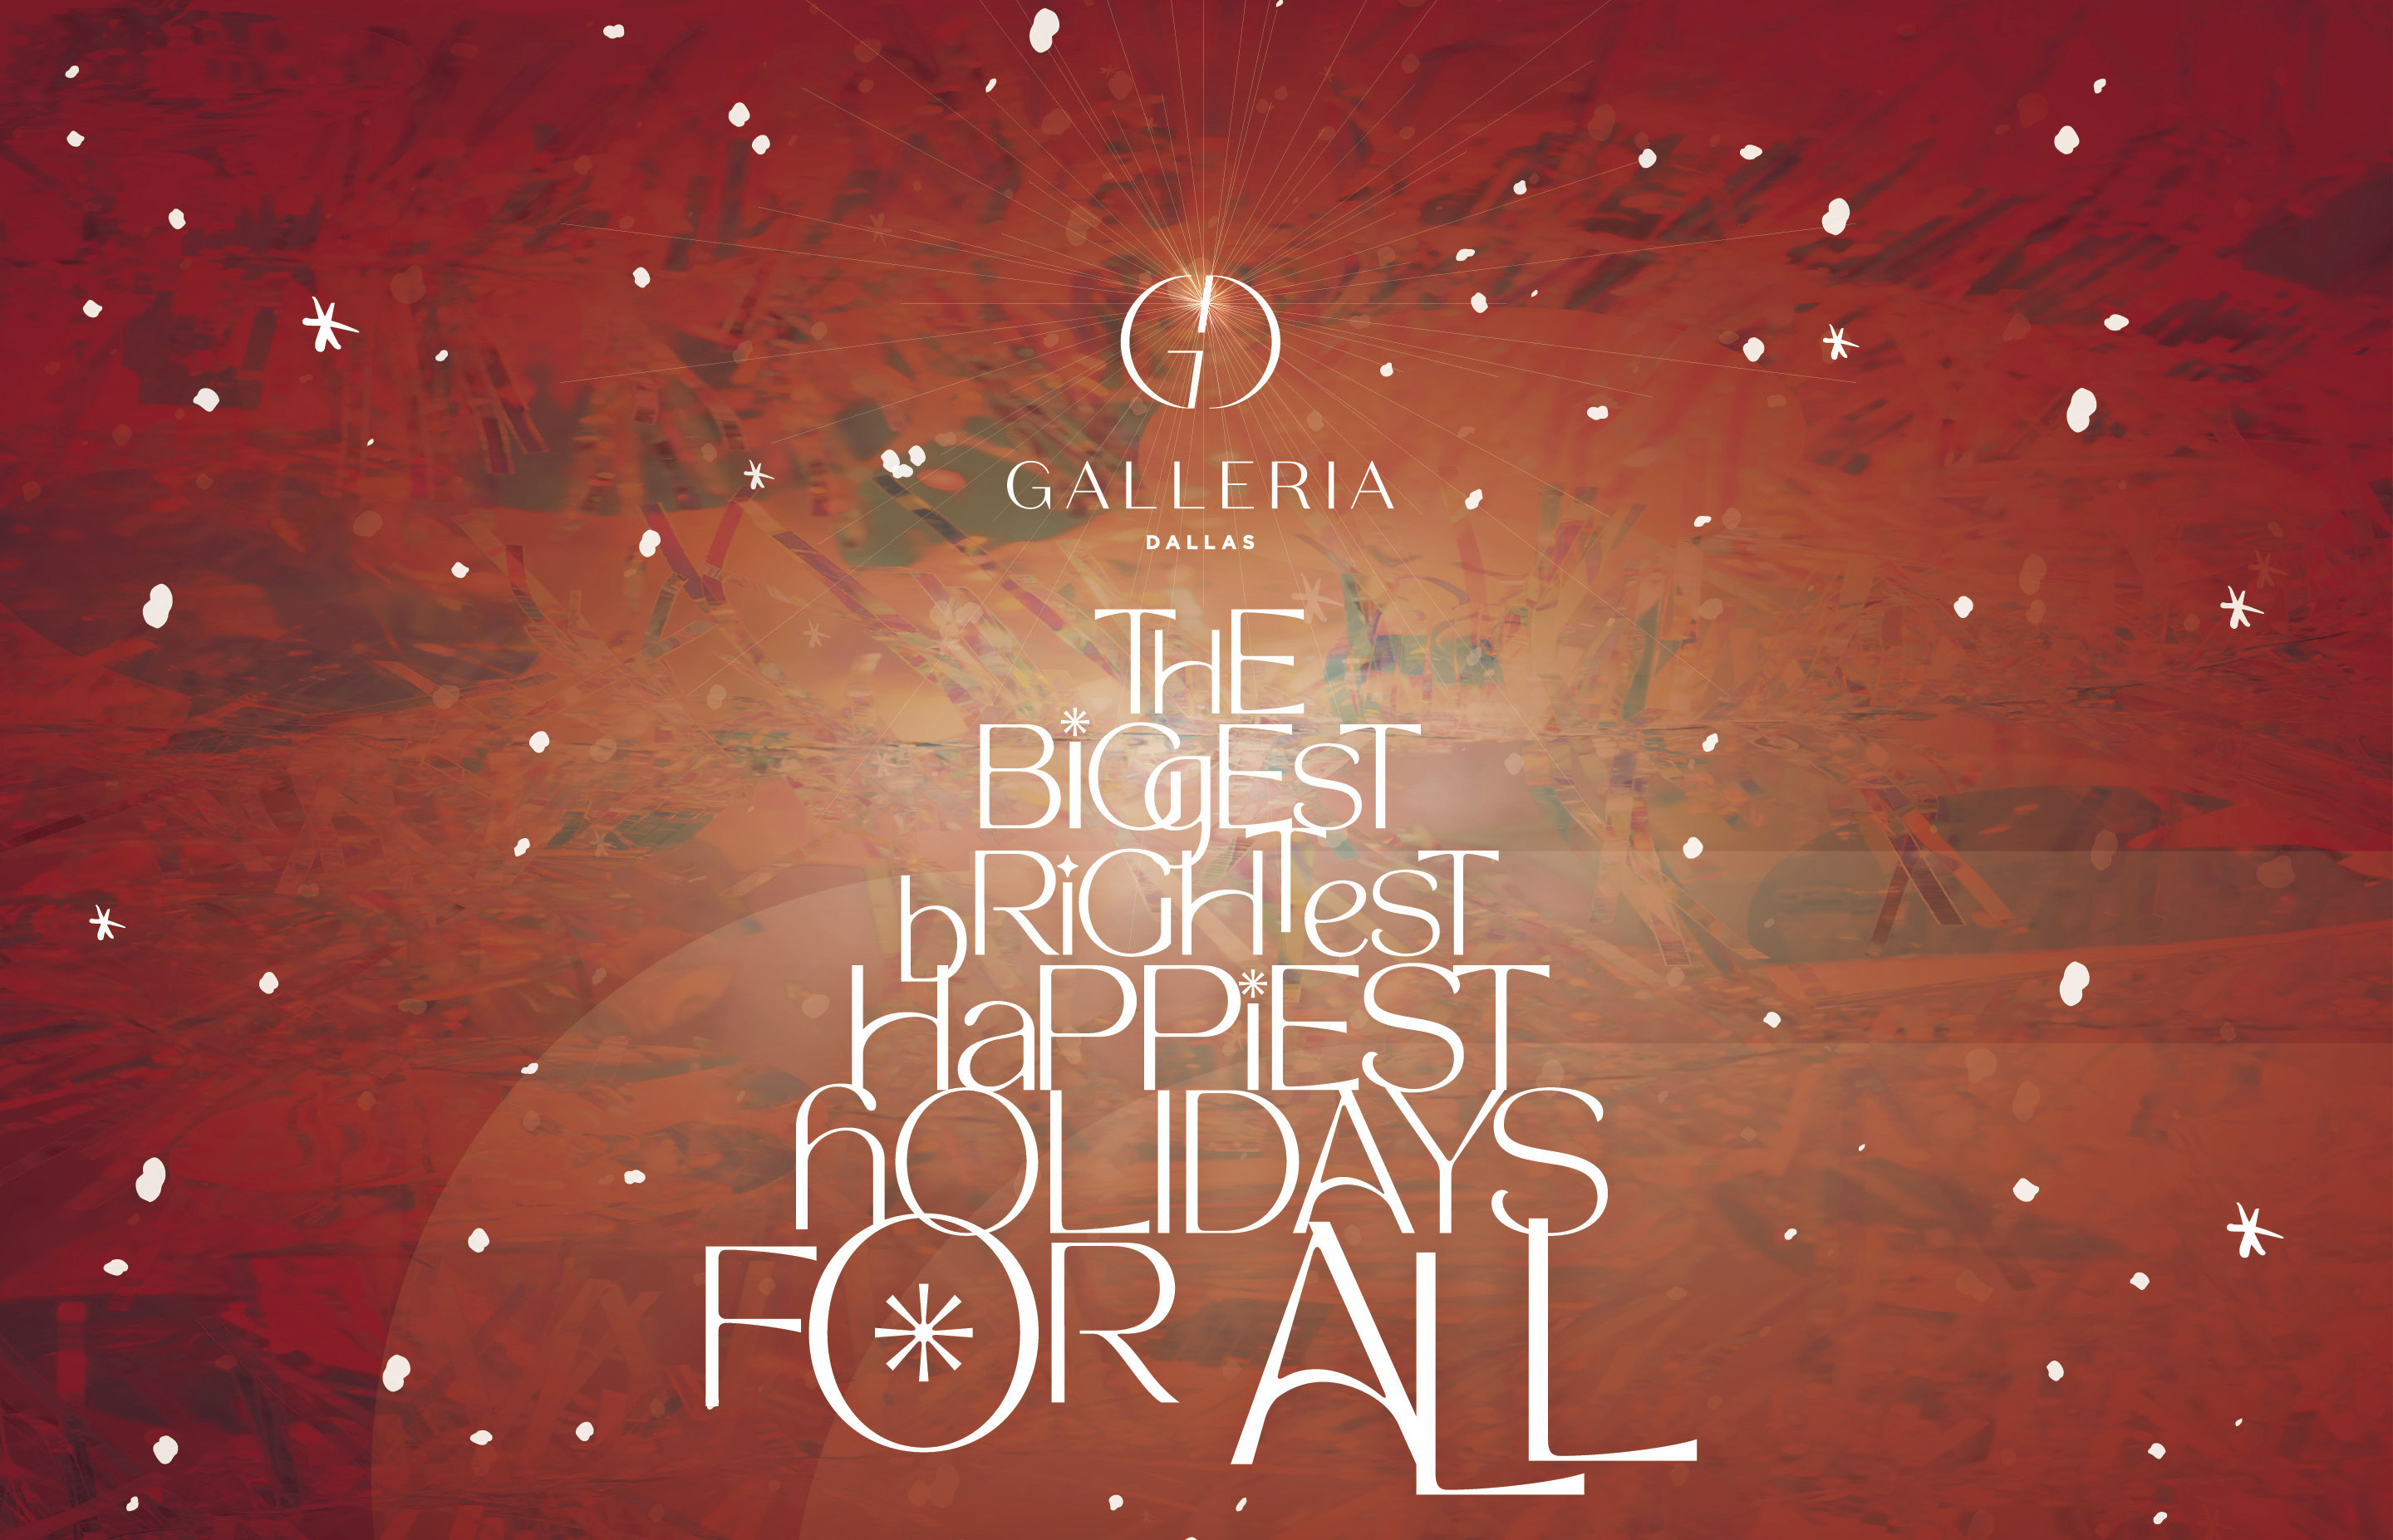 The Holidays are Here! Celebrate at Galleria Dallas - Local Profile